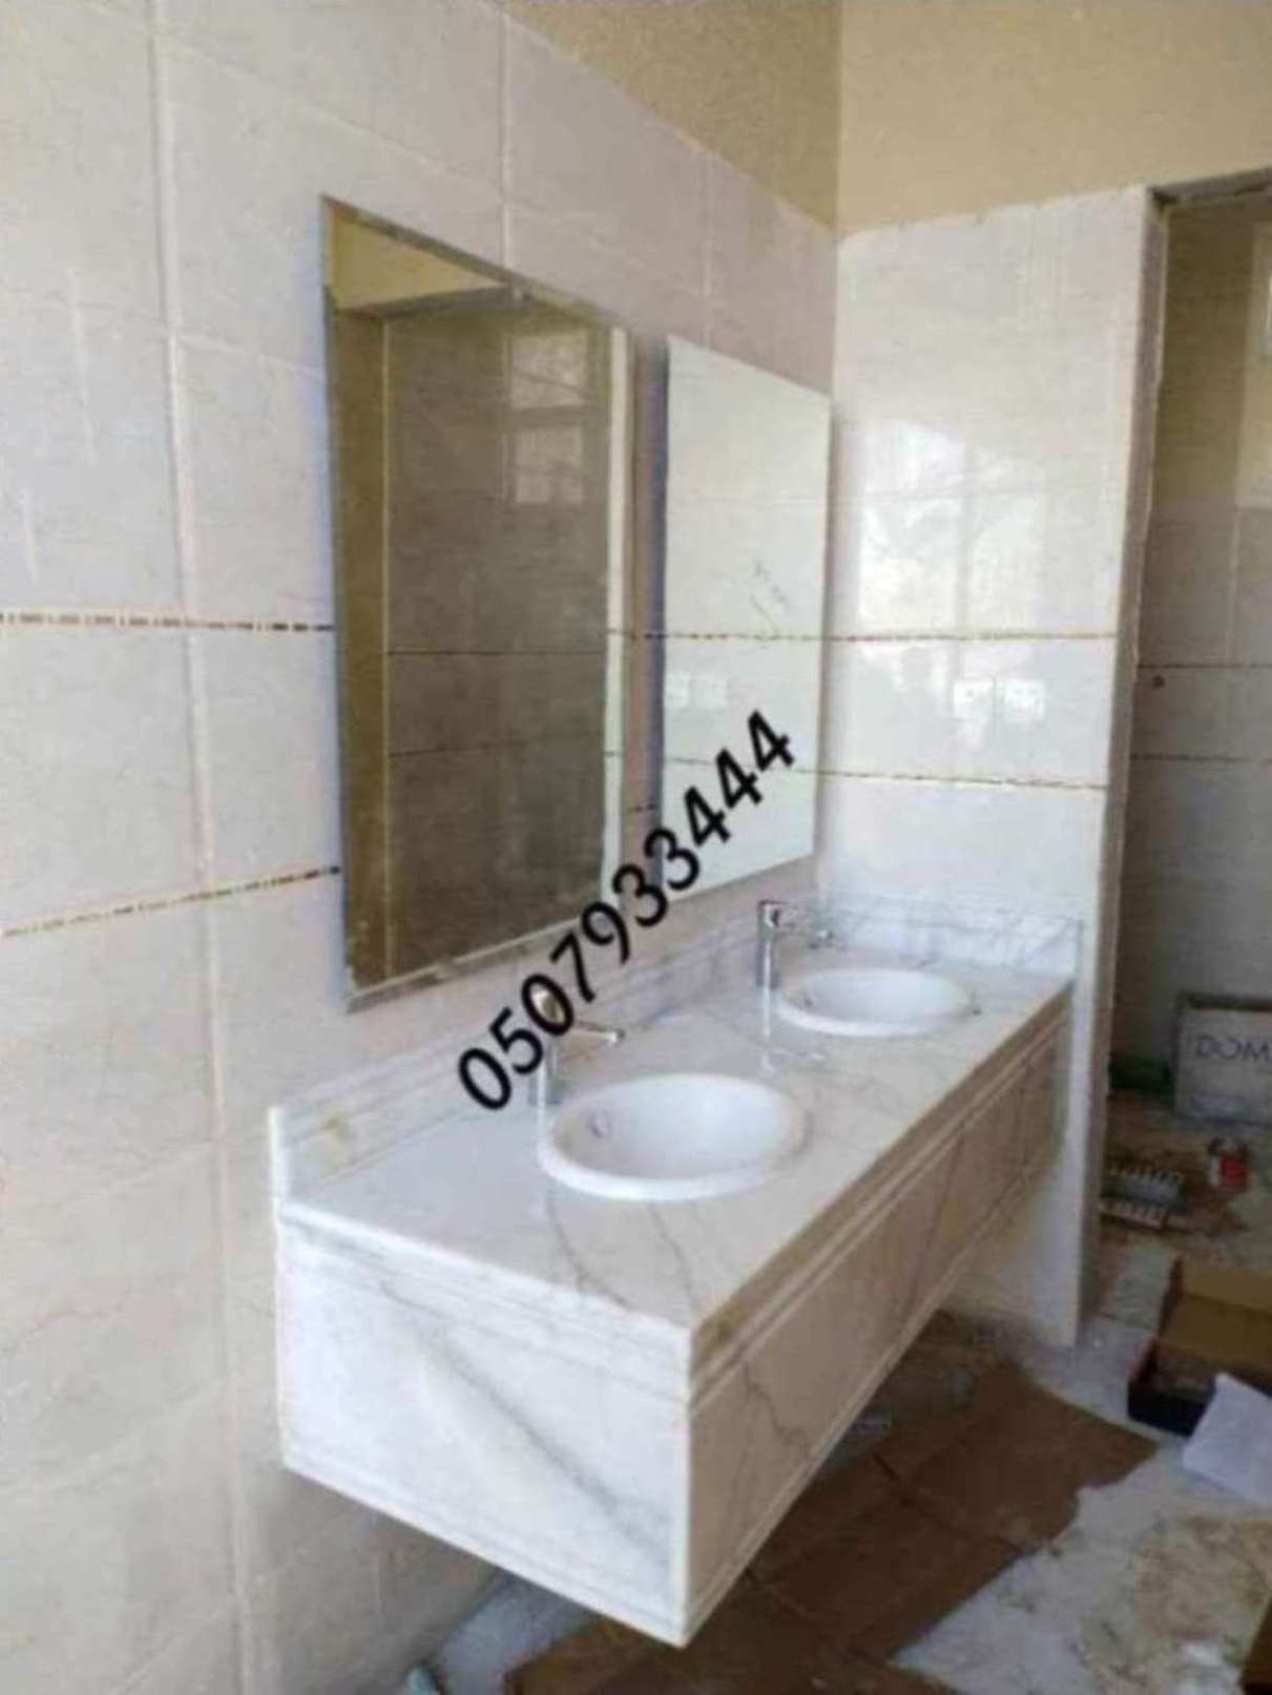 مغاسل رخام الرياض اروع مغاسل الحمامات الحديثة